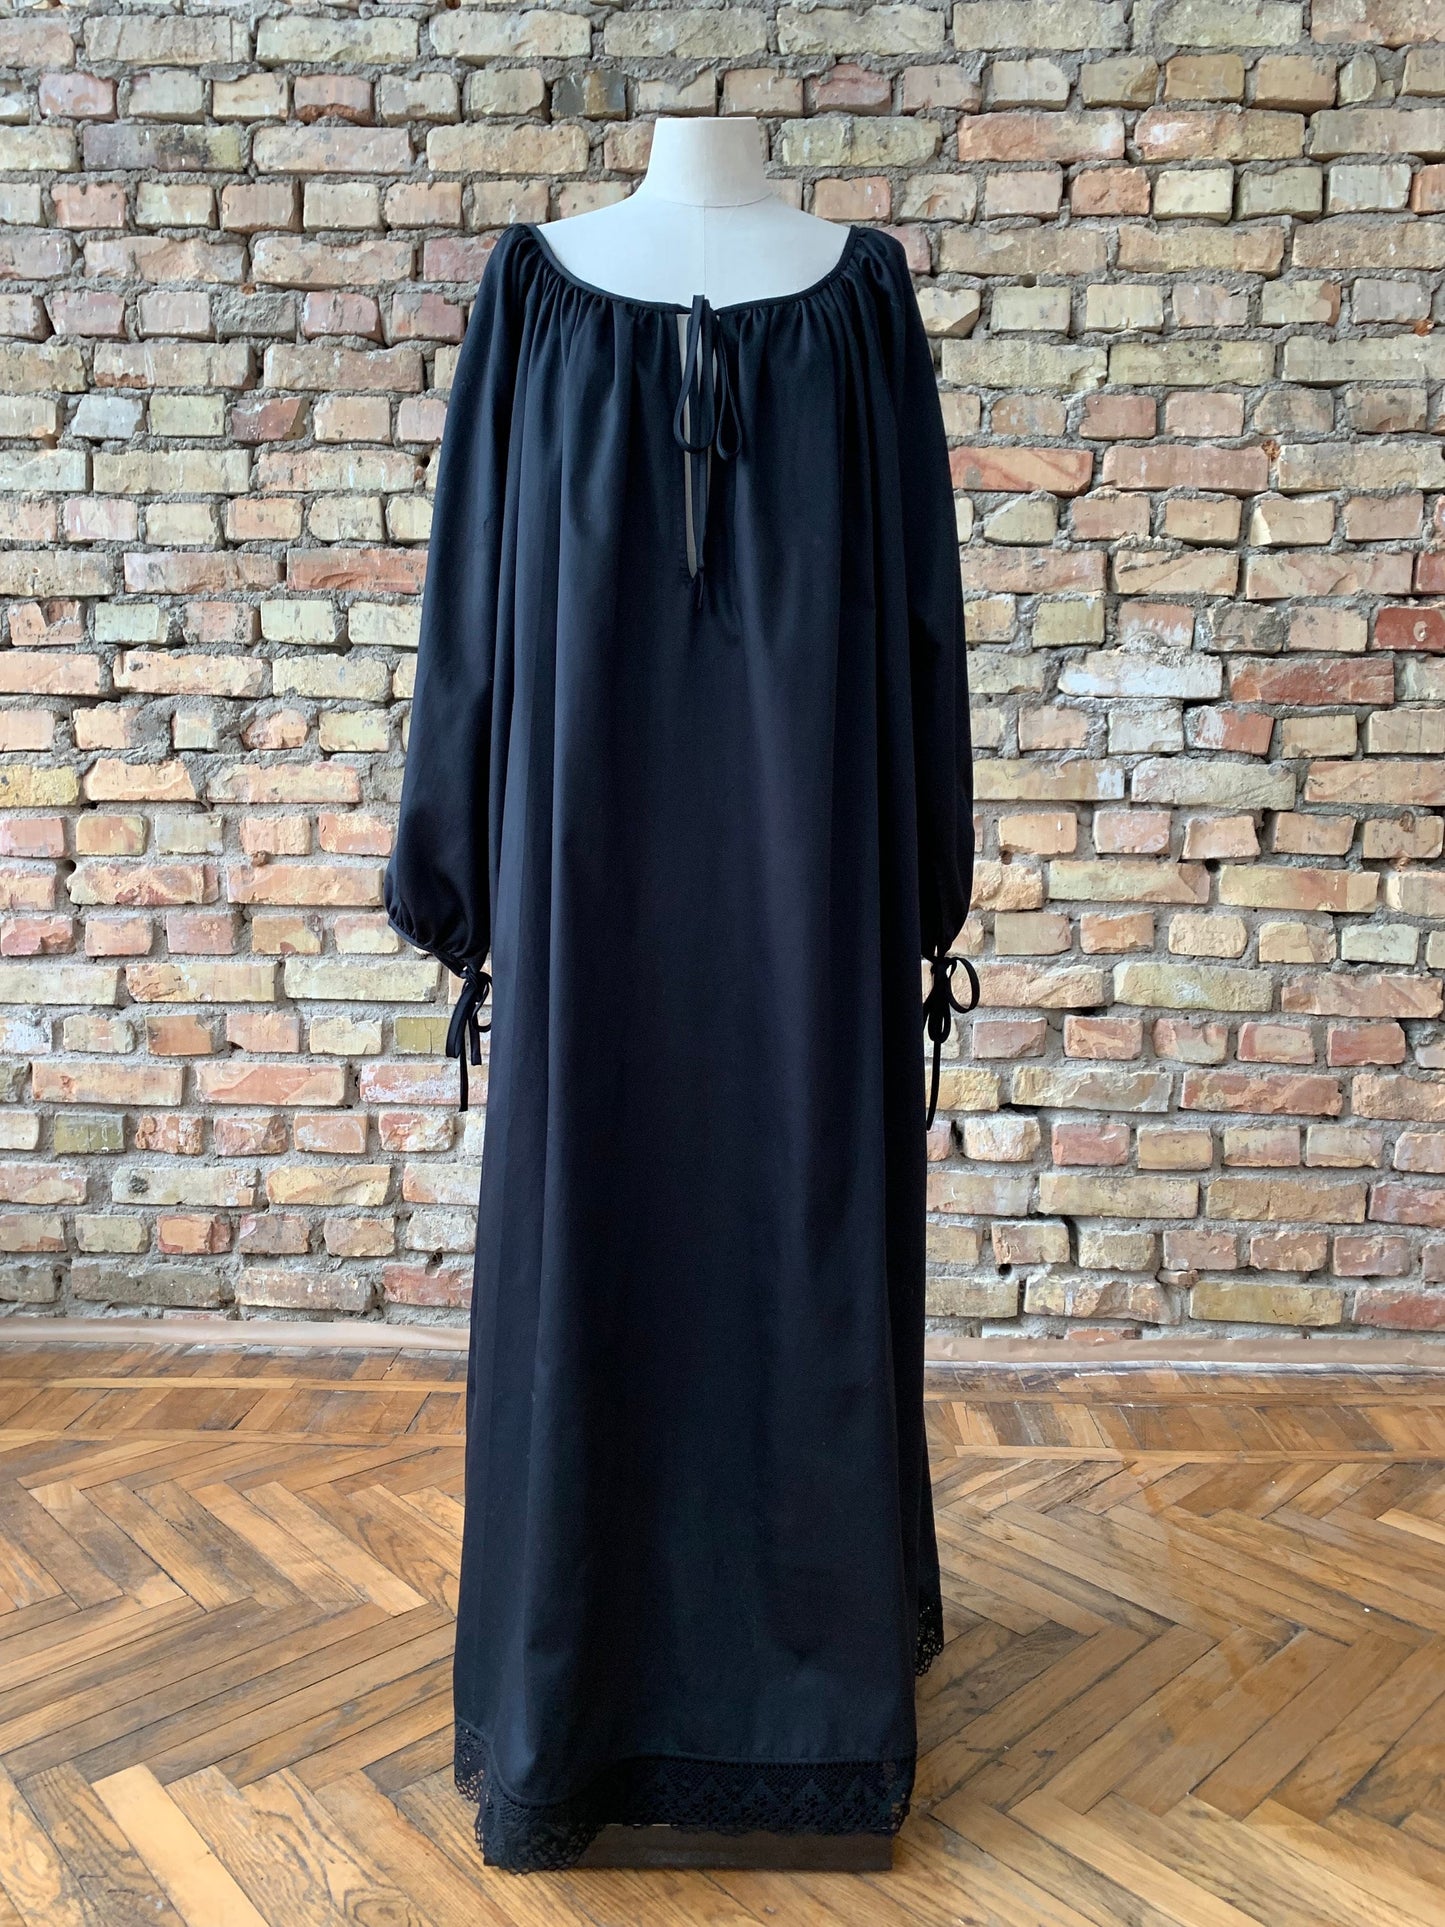 Milda Gown in Black Cotton